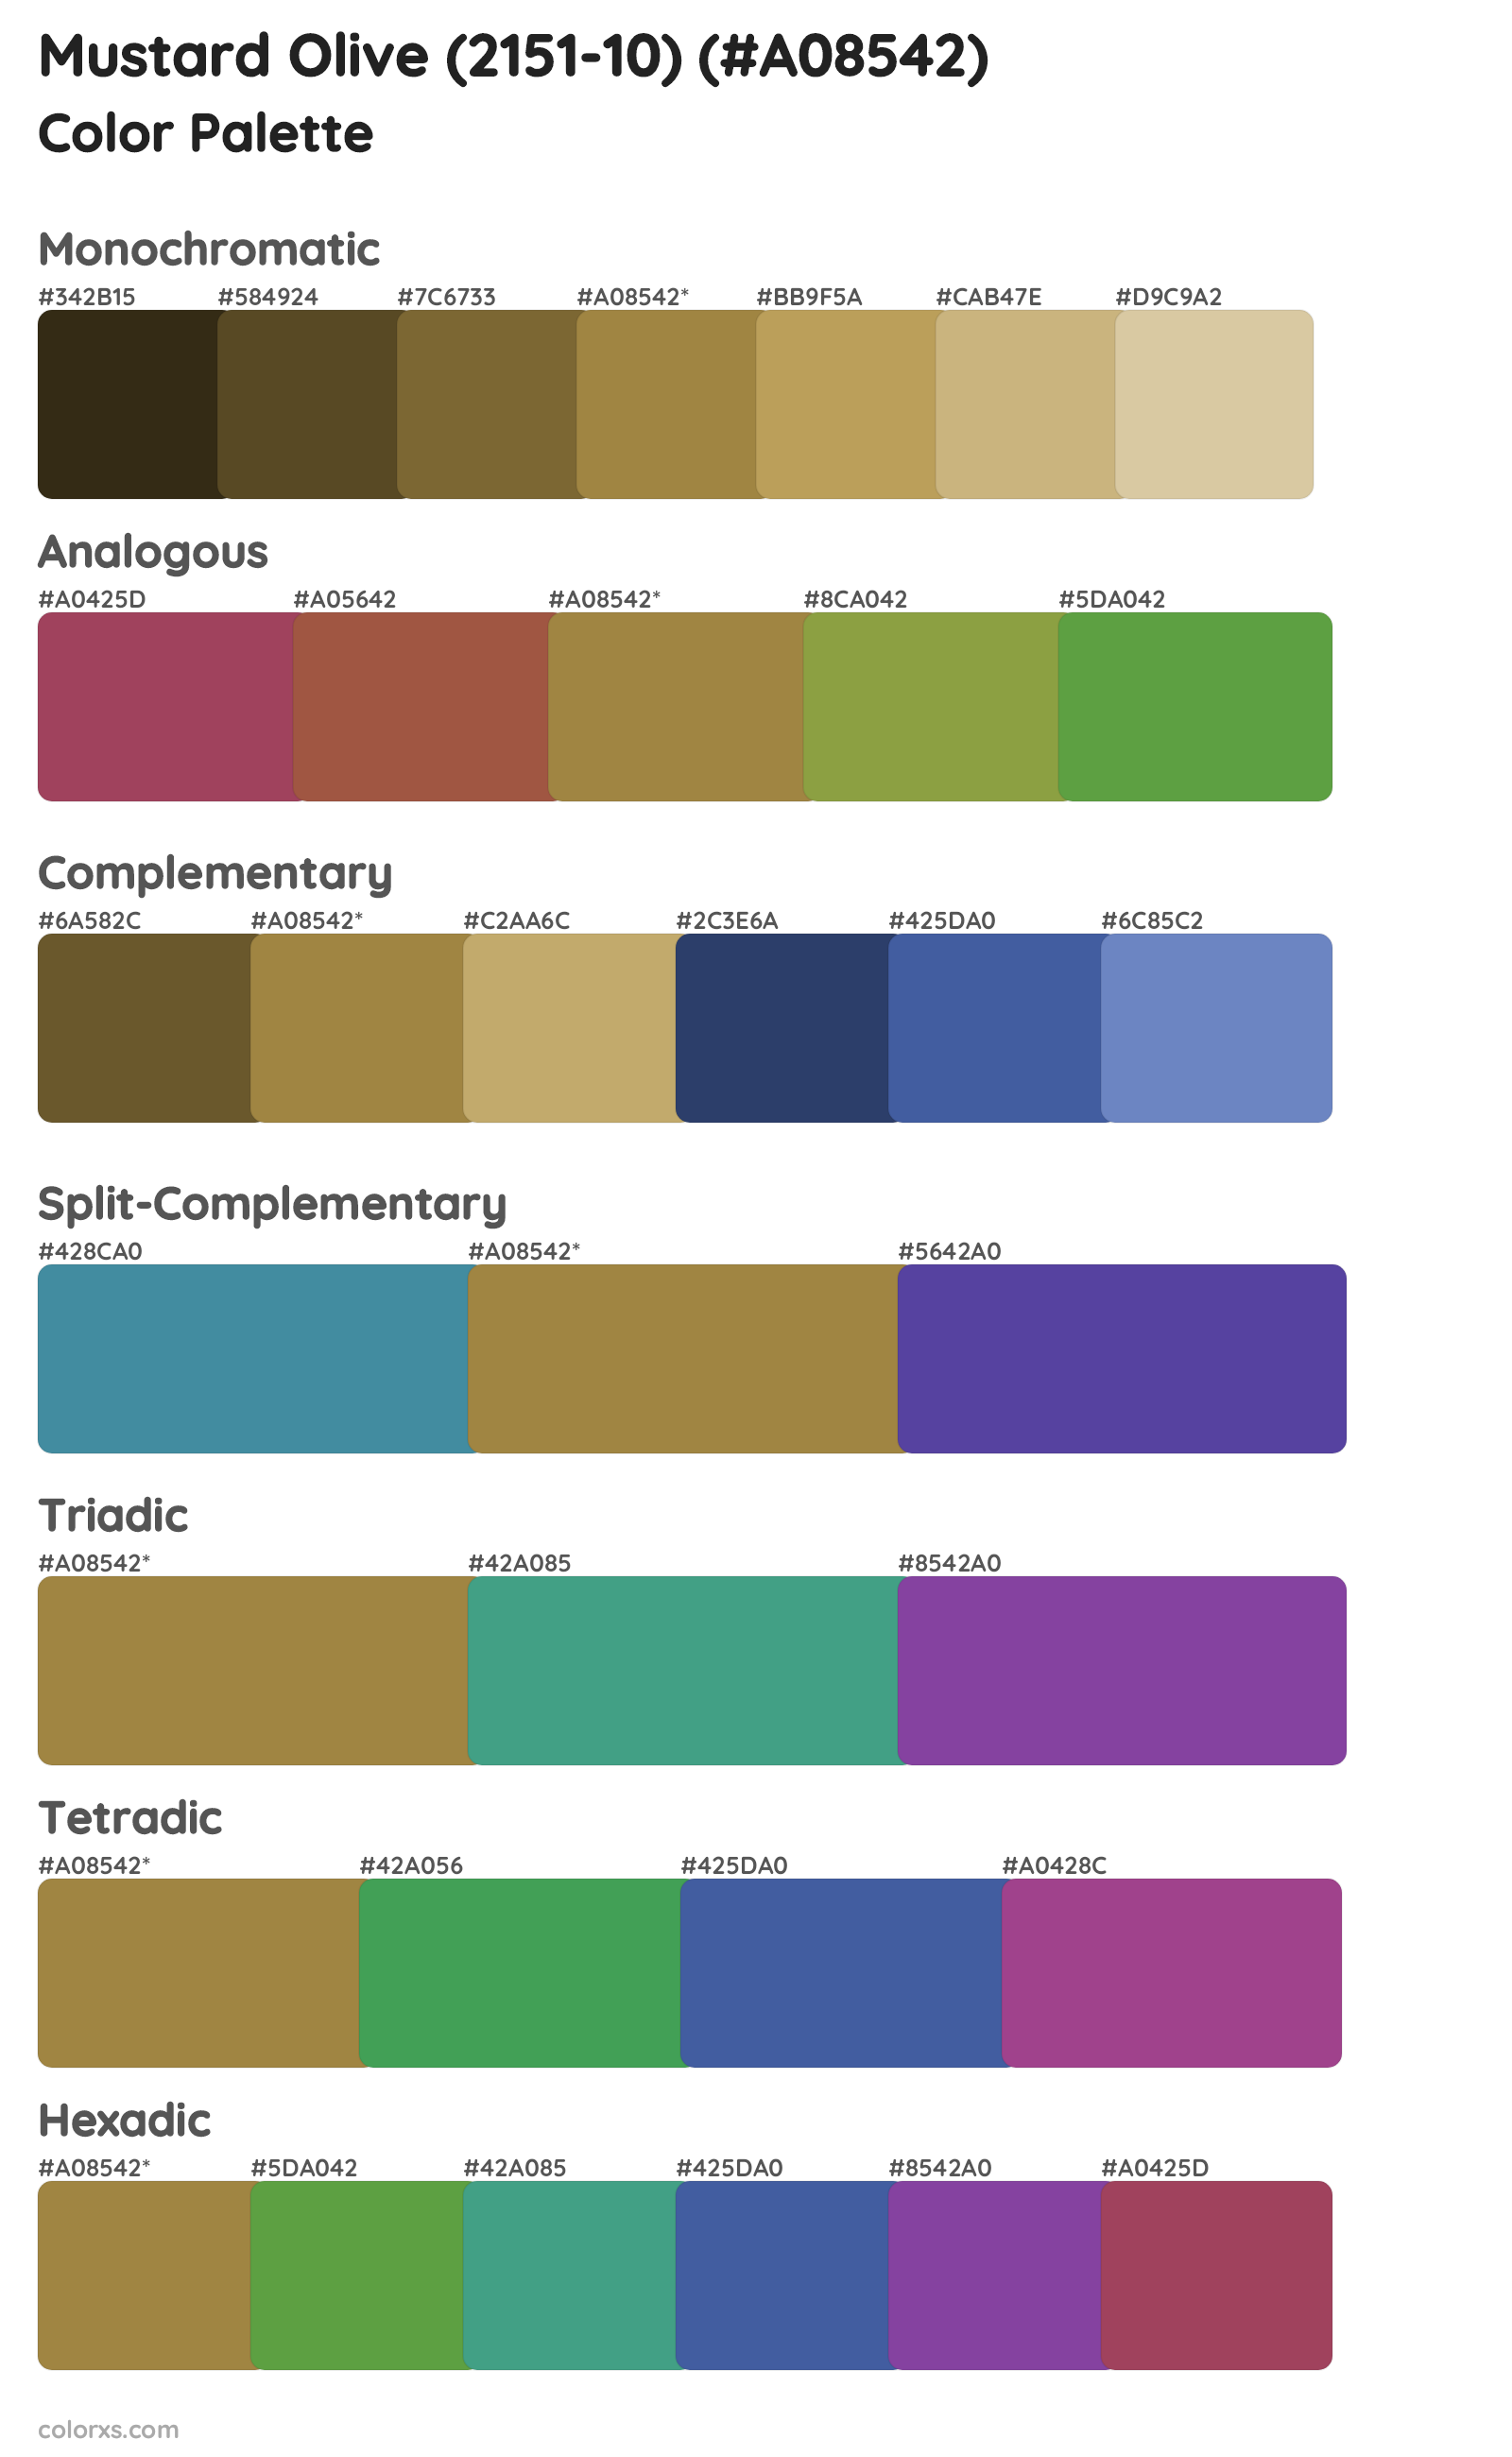 Mustard Olive (2151-10) Color Scheme Palettes